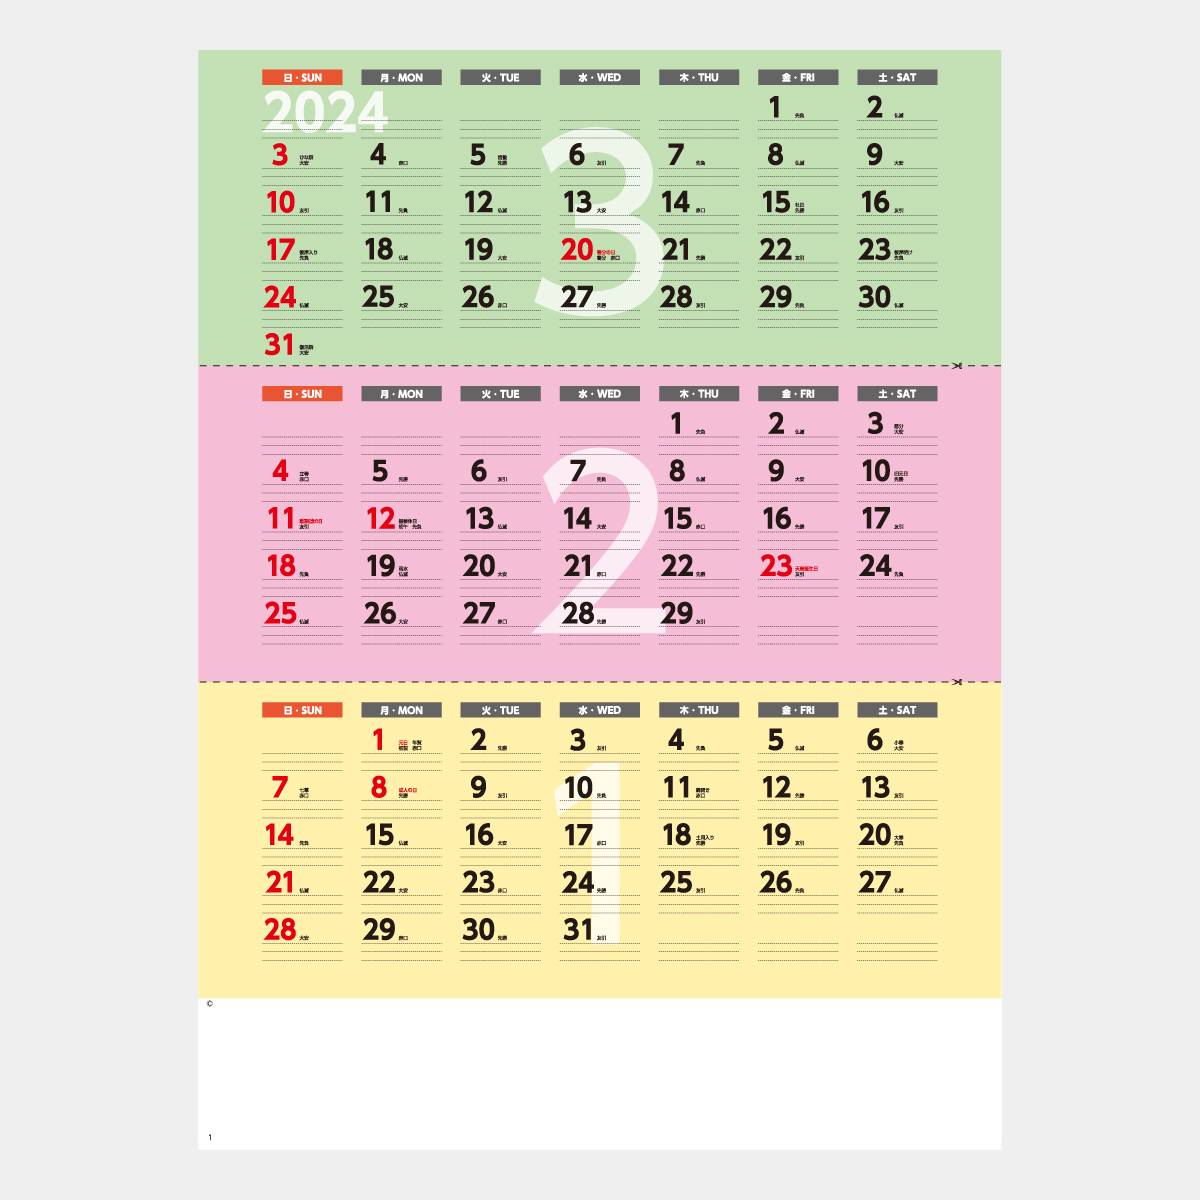 SP-131 マイチェック3か月文字カレンダー